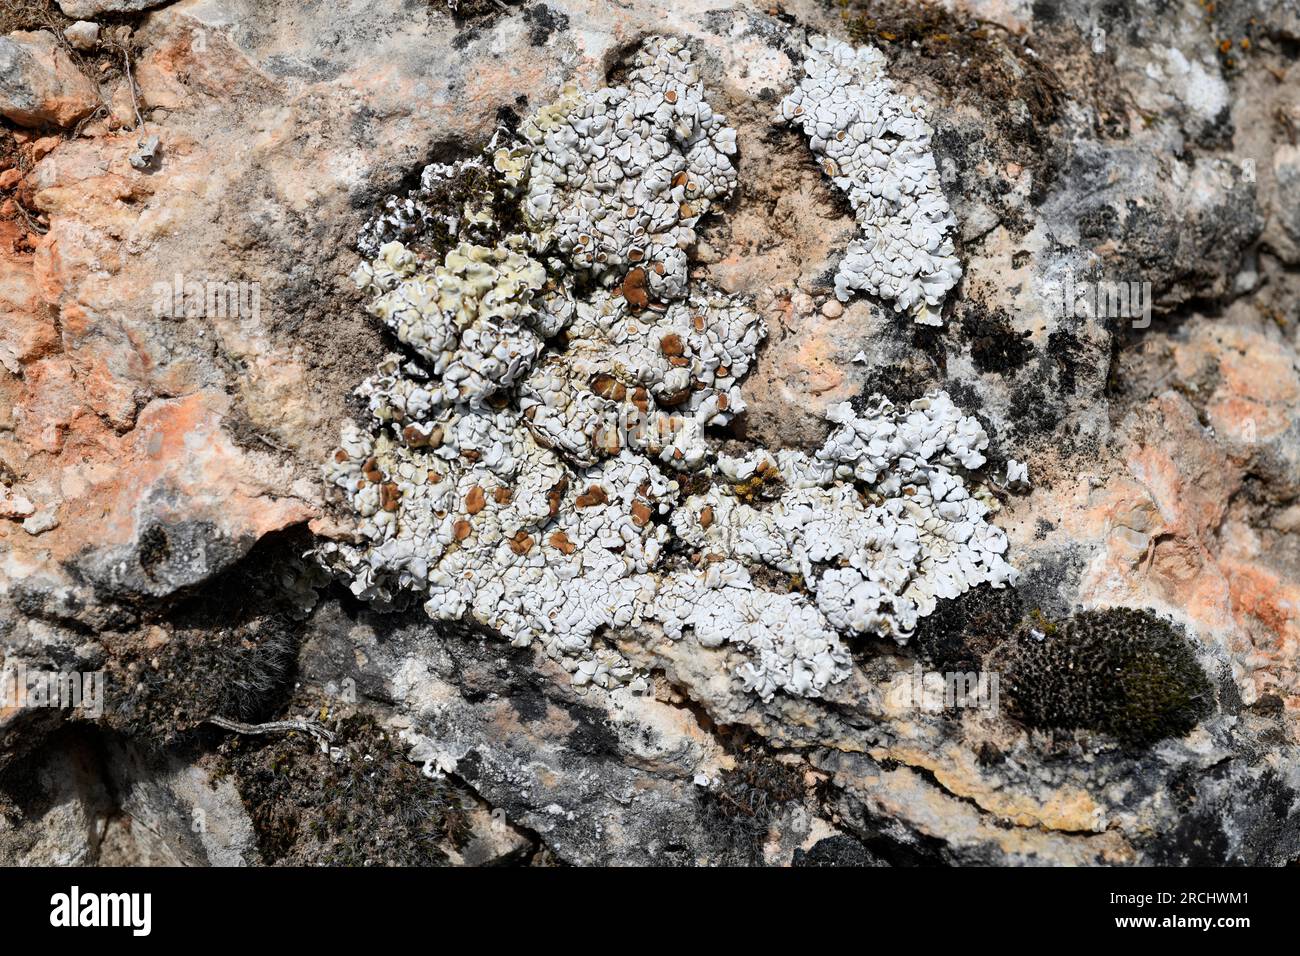 Squamarina lentigera is a squamulose lichen. This photo was taken in Serranía de Cuenca, Castilla-La Mancha, Spain. Stock Photo